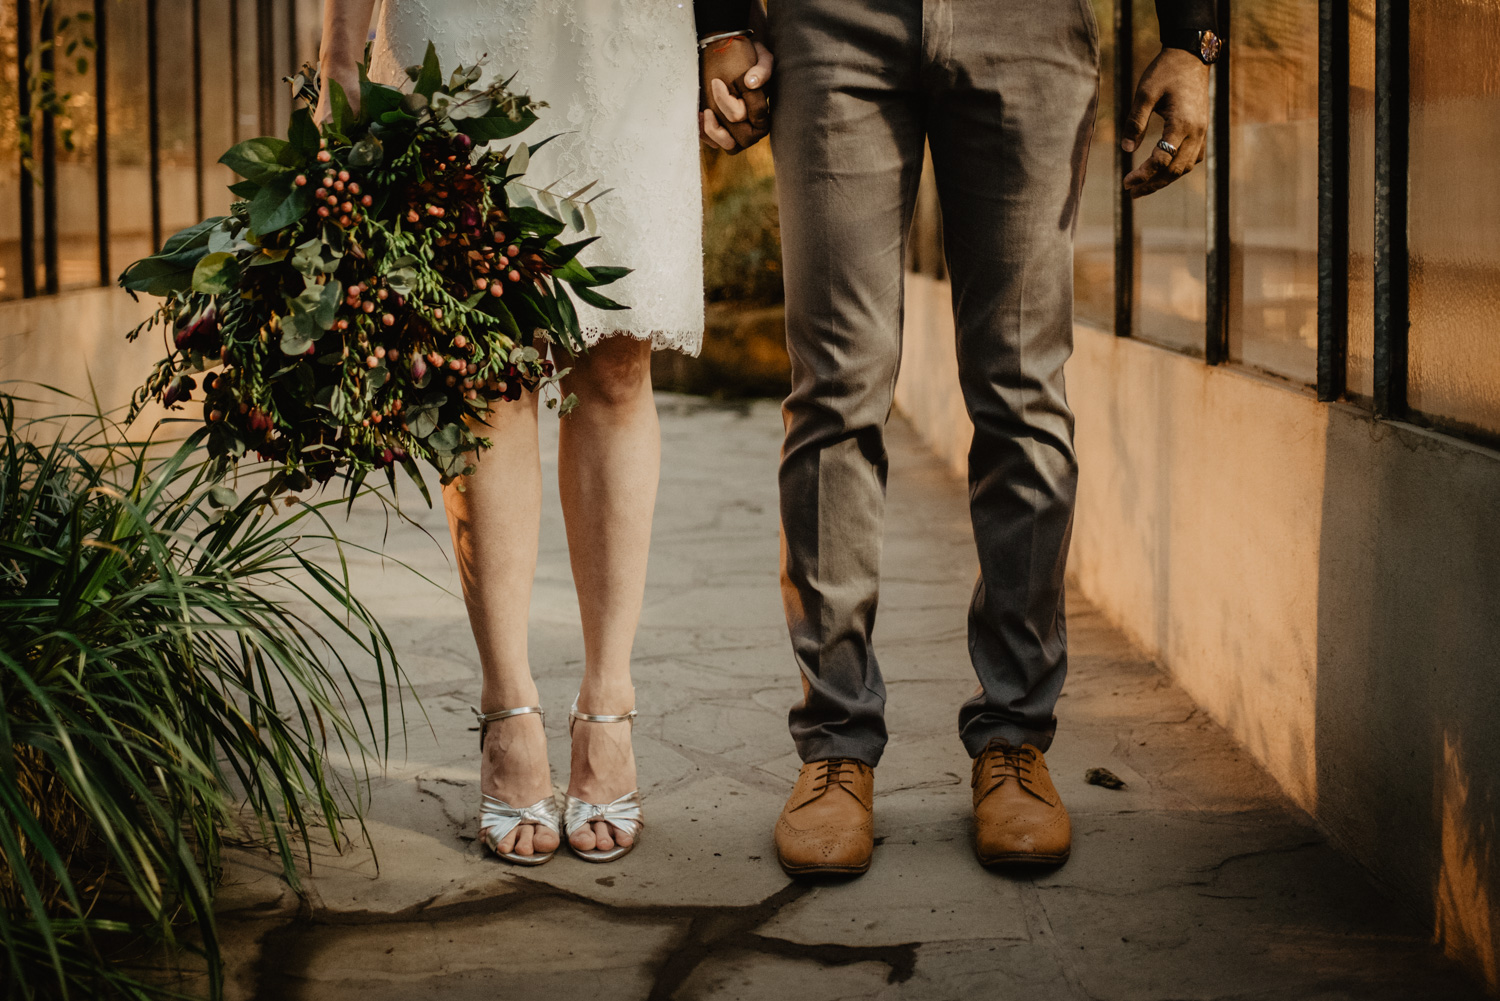 Detailfoto der Füße des Brautpaares. Sie hat ein kurzes Kleid und silberfarbene High Heels an, er eine dunkelgraue Stoffhose und hellbraune Anzugschuhe.